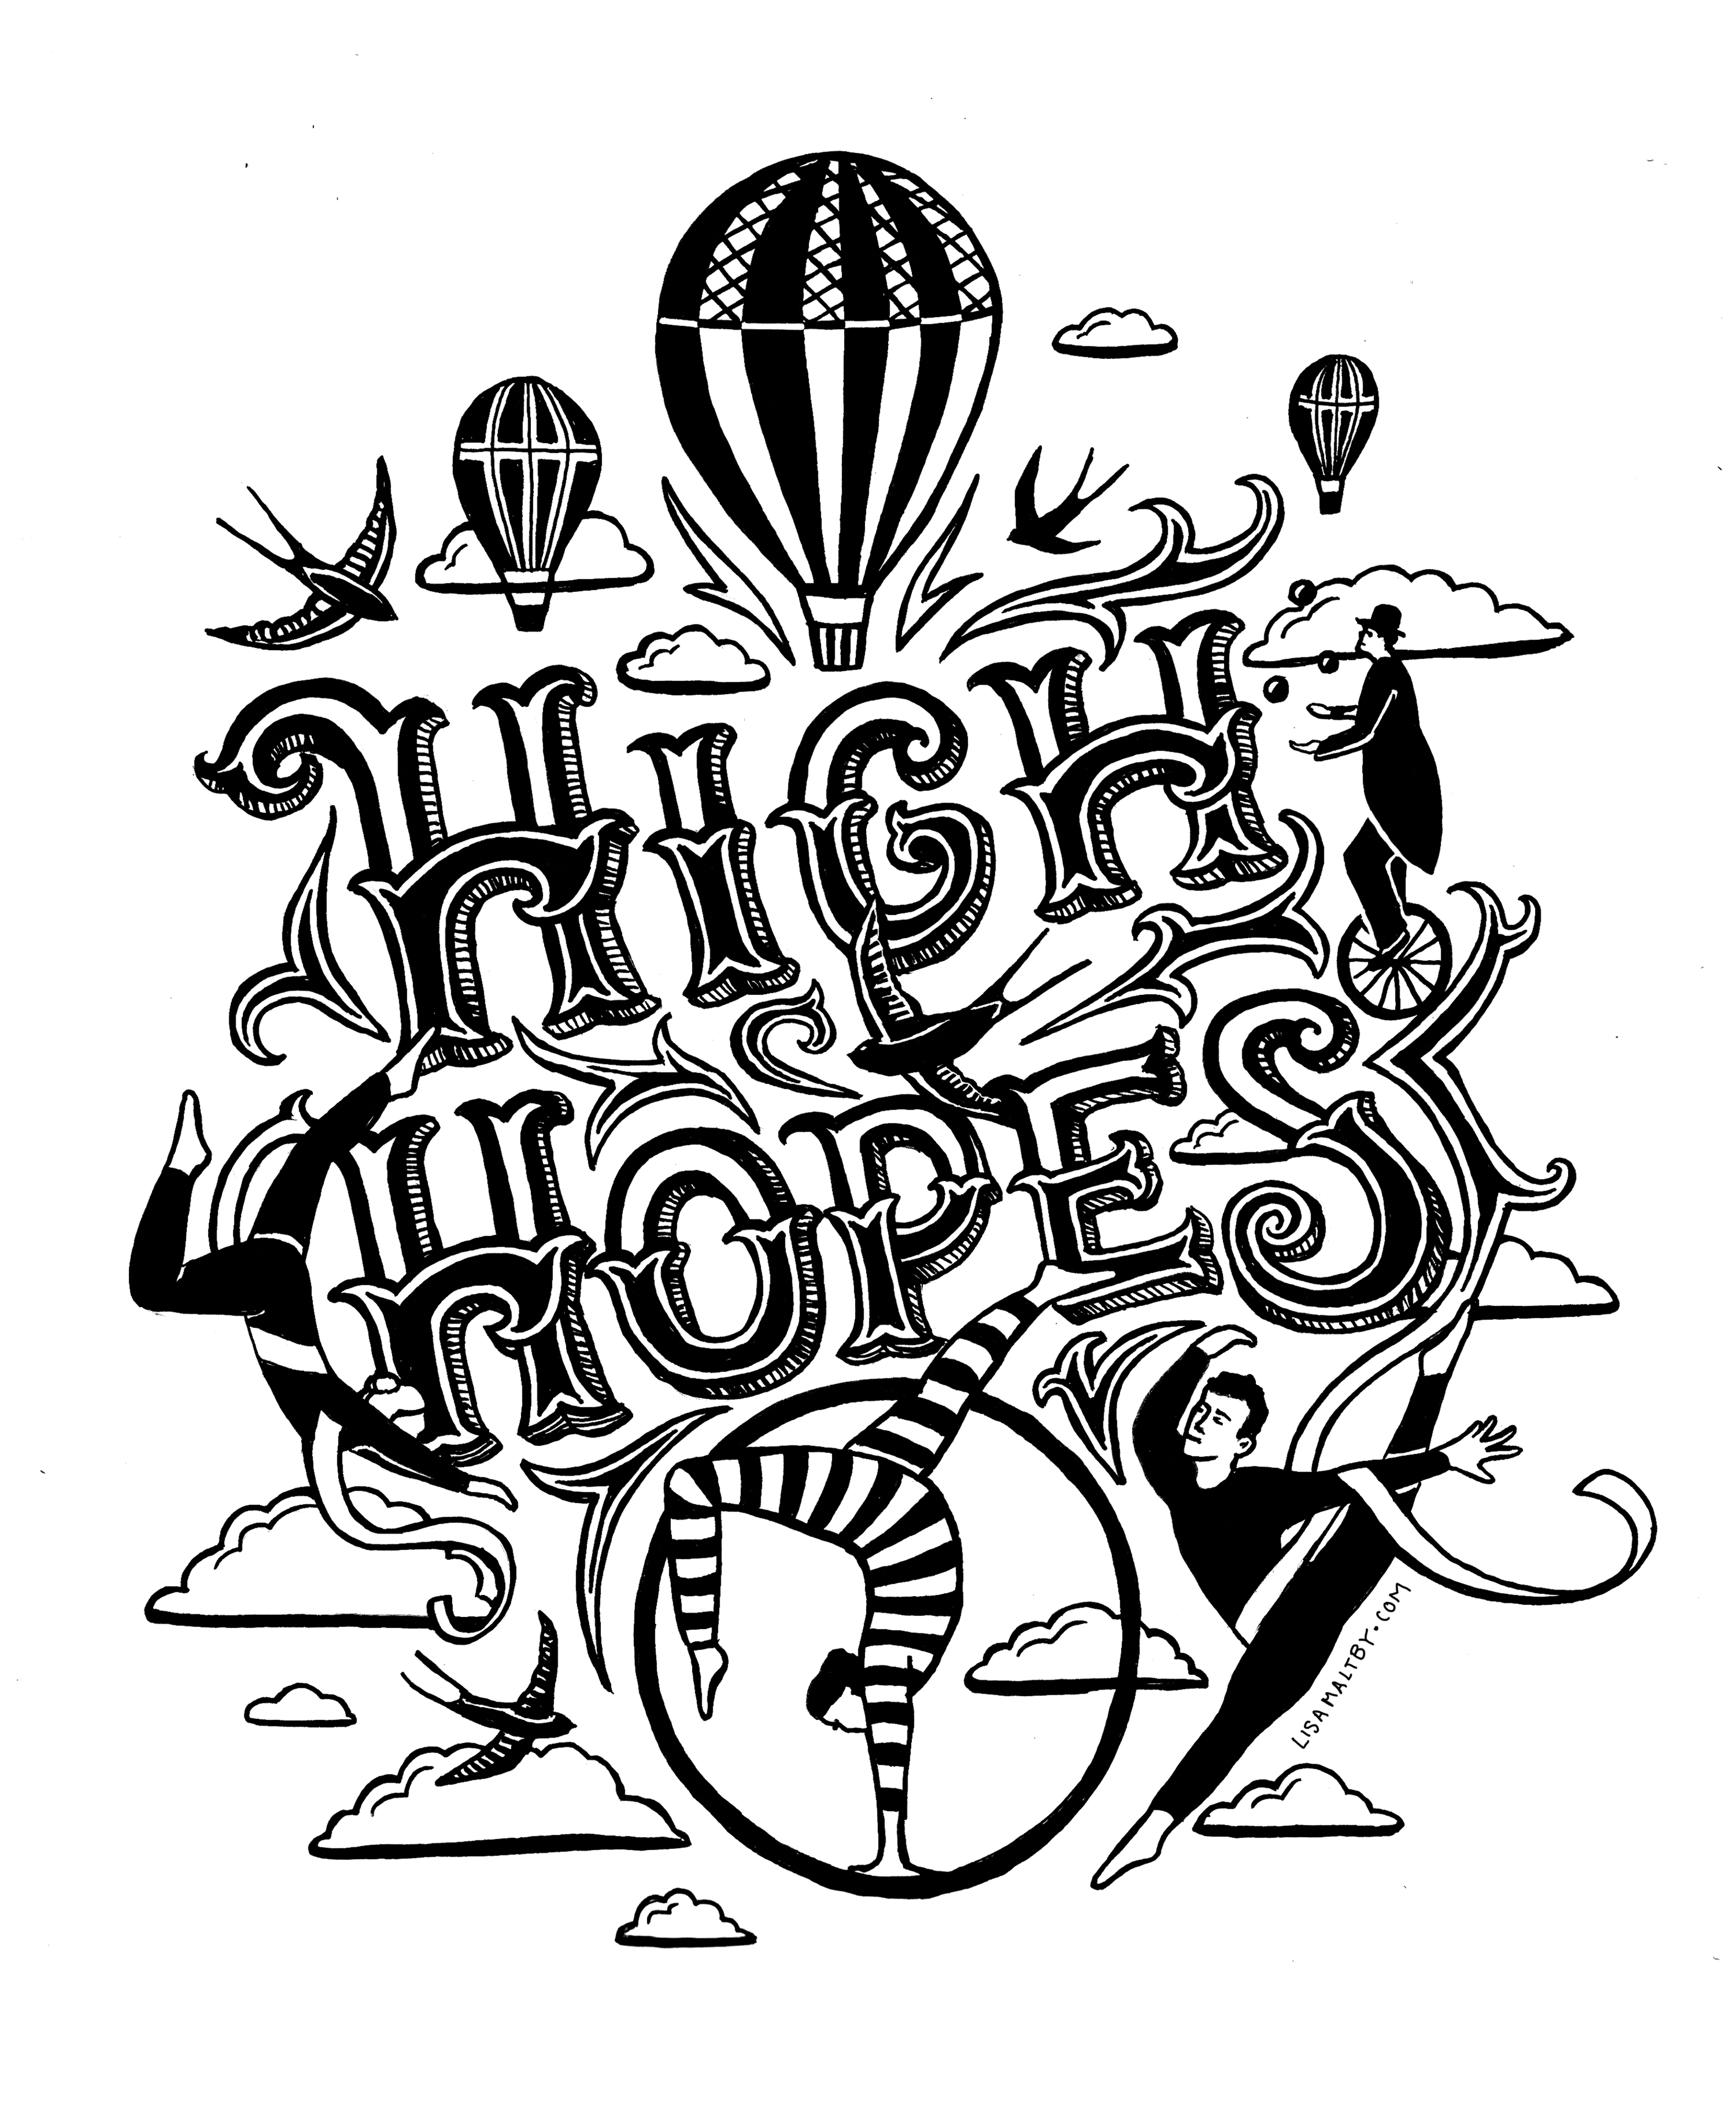 high hopes_┬®_lisamaltby.jpg